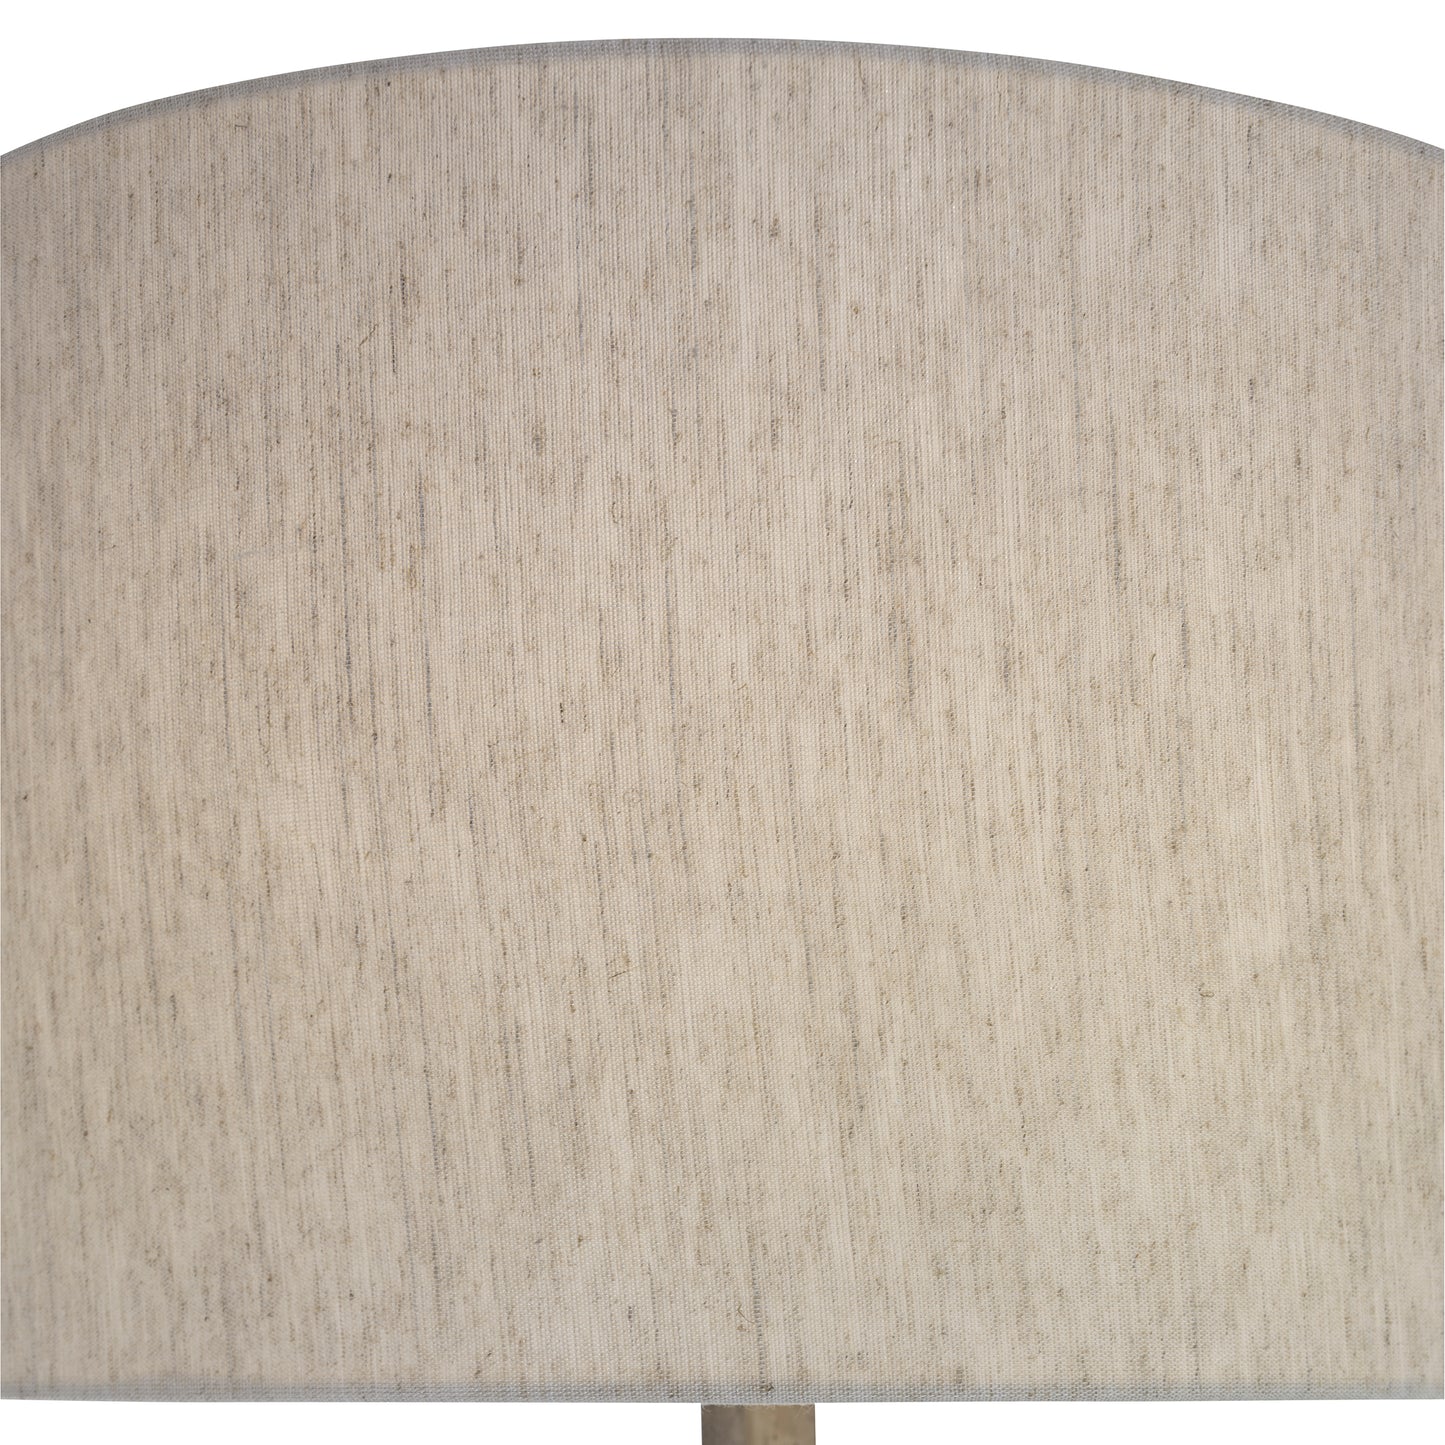 Ivor Floor Lamp - Stickley Furniture | Mattress